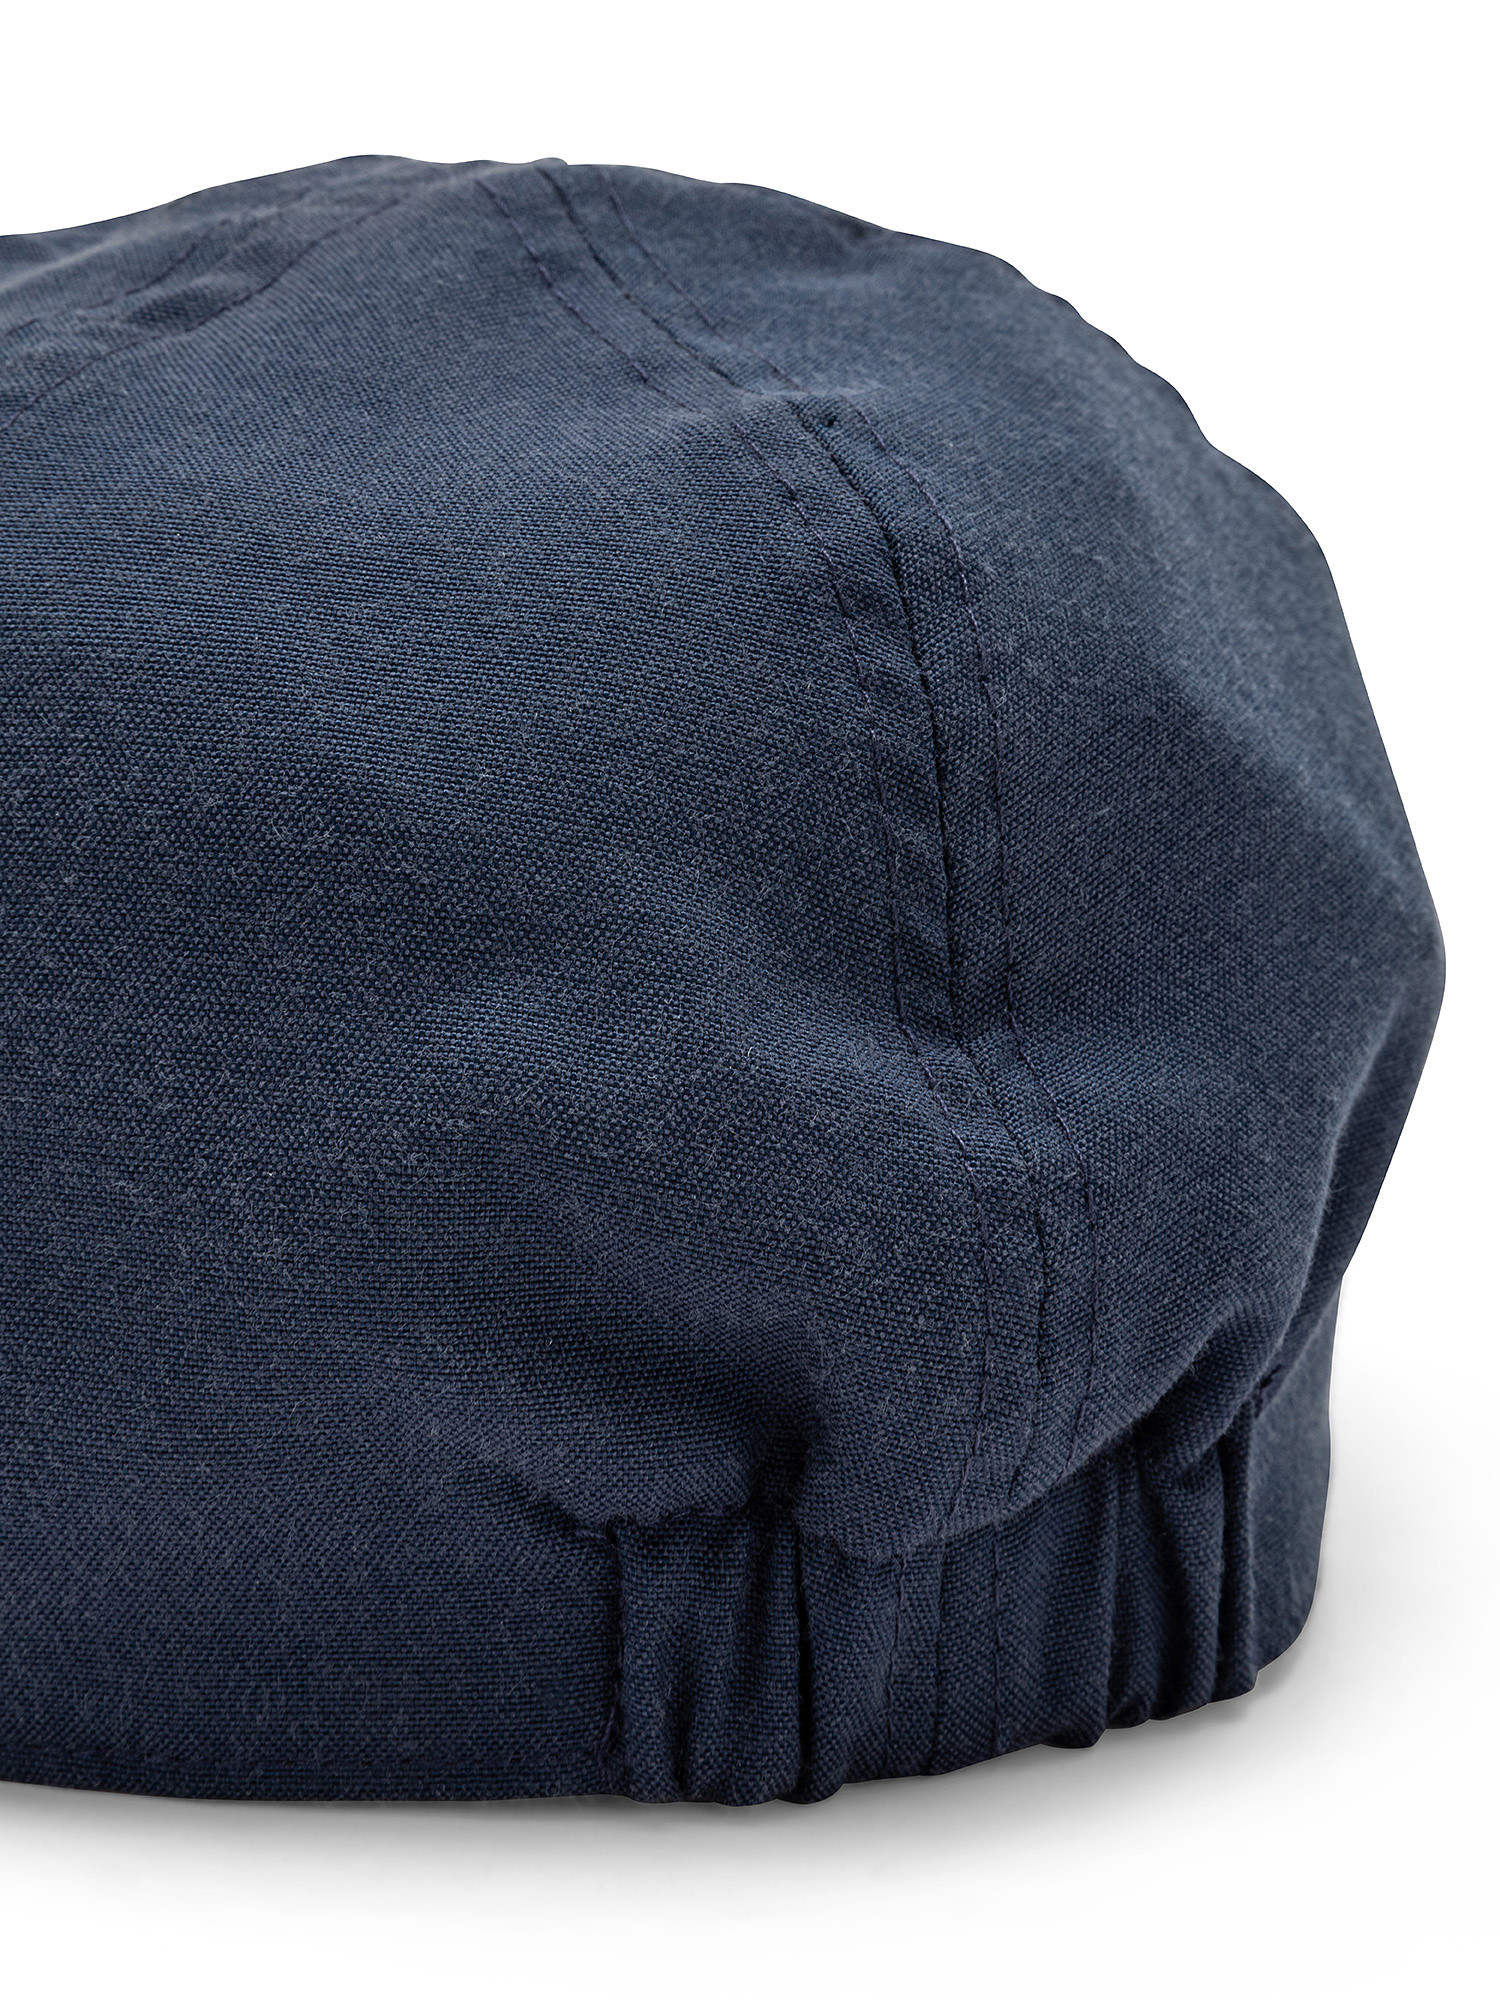 Cappello tessuto oxford tinta unita, Blu, large